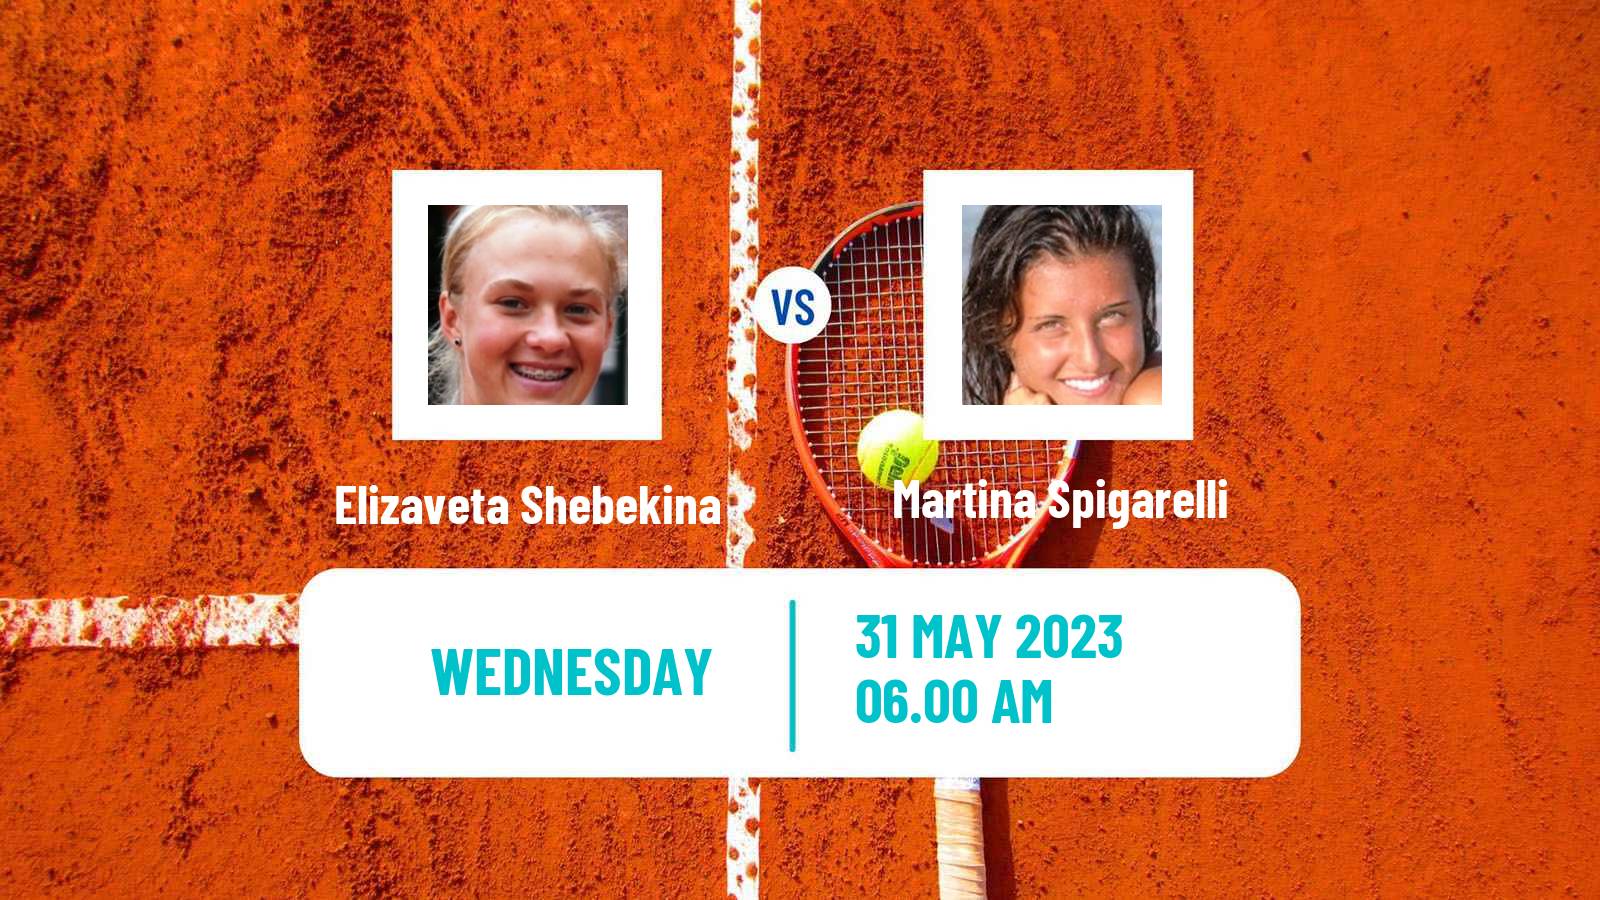 Tennis ITF W15 Monastir 17 Women Elizaveta Shebekina - Martina Spigarelli